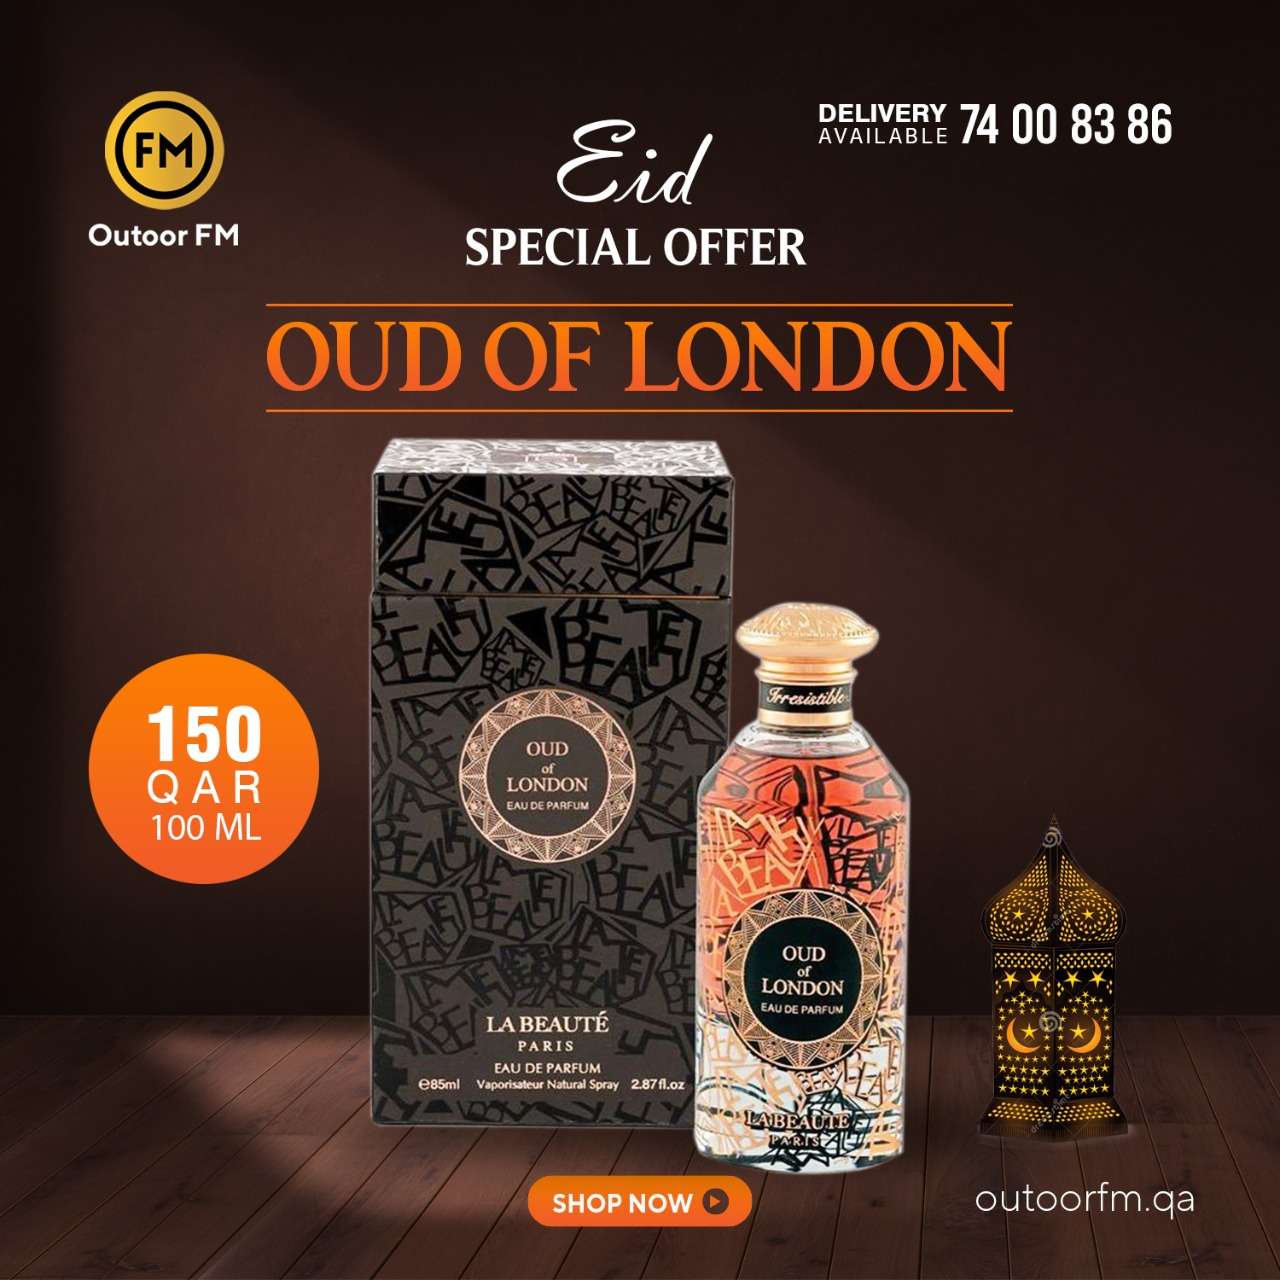 Oud London